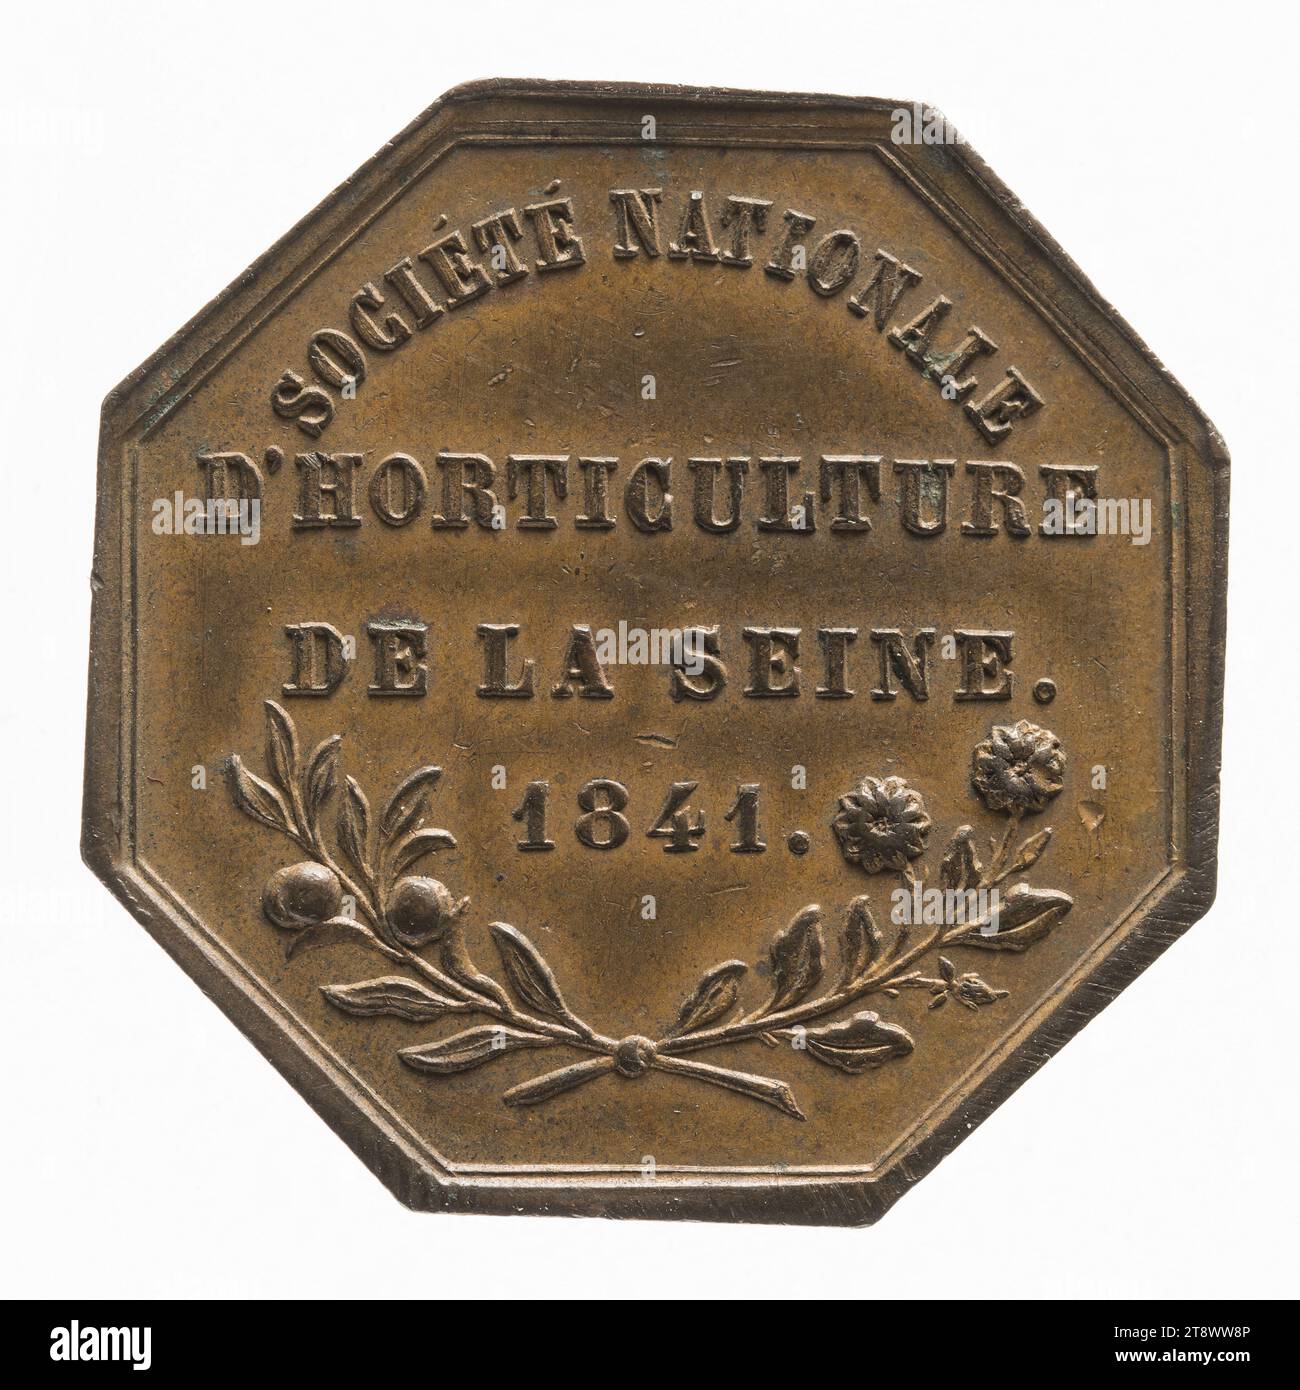 Société nationale d'garticulture de la seine, 1841, Bescher, Auguste, Gravierer in Medaillen, in 1841, Numismatik, Token (Numismatik), Kupfer, Abmessungen - Werk: Durchmesser: 2,9 cm, Gewicht (Typenmaß): 10,74 g Stockfoto